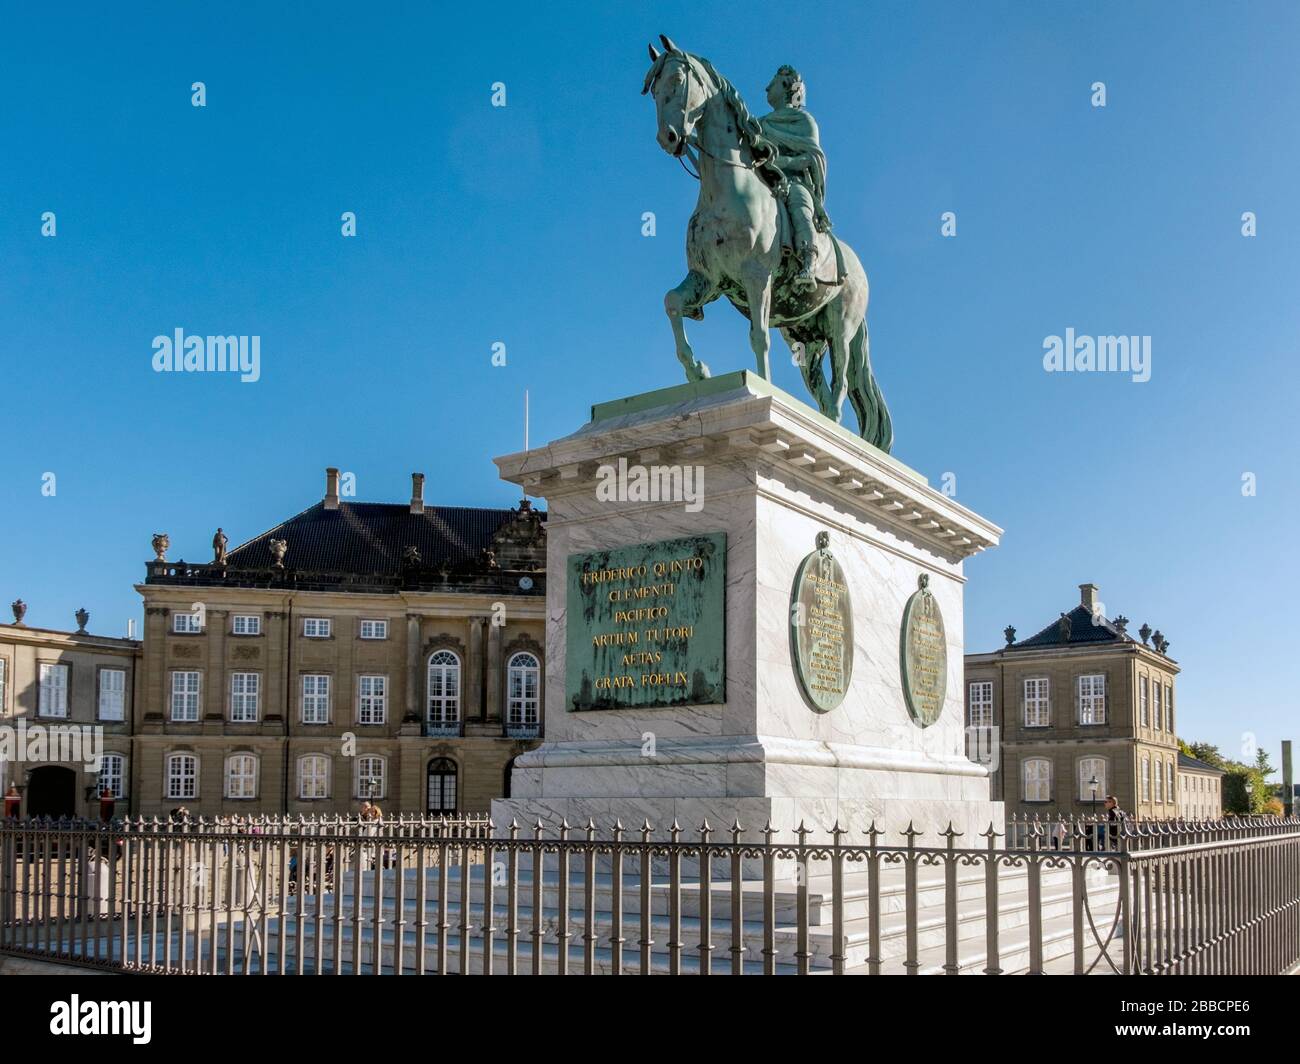 Statue équestre en bronze du roi Frederik V du Danemark, place Amalienborg, Copenhague, Danemark Banque D'Images